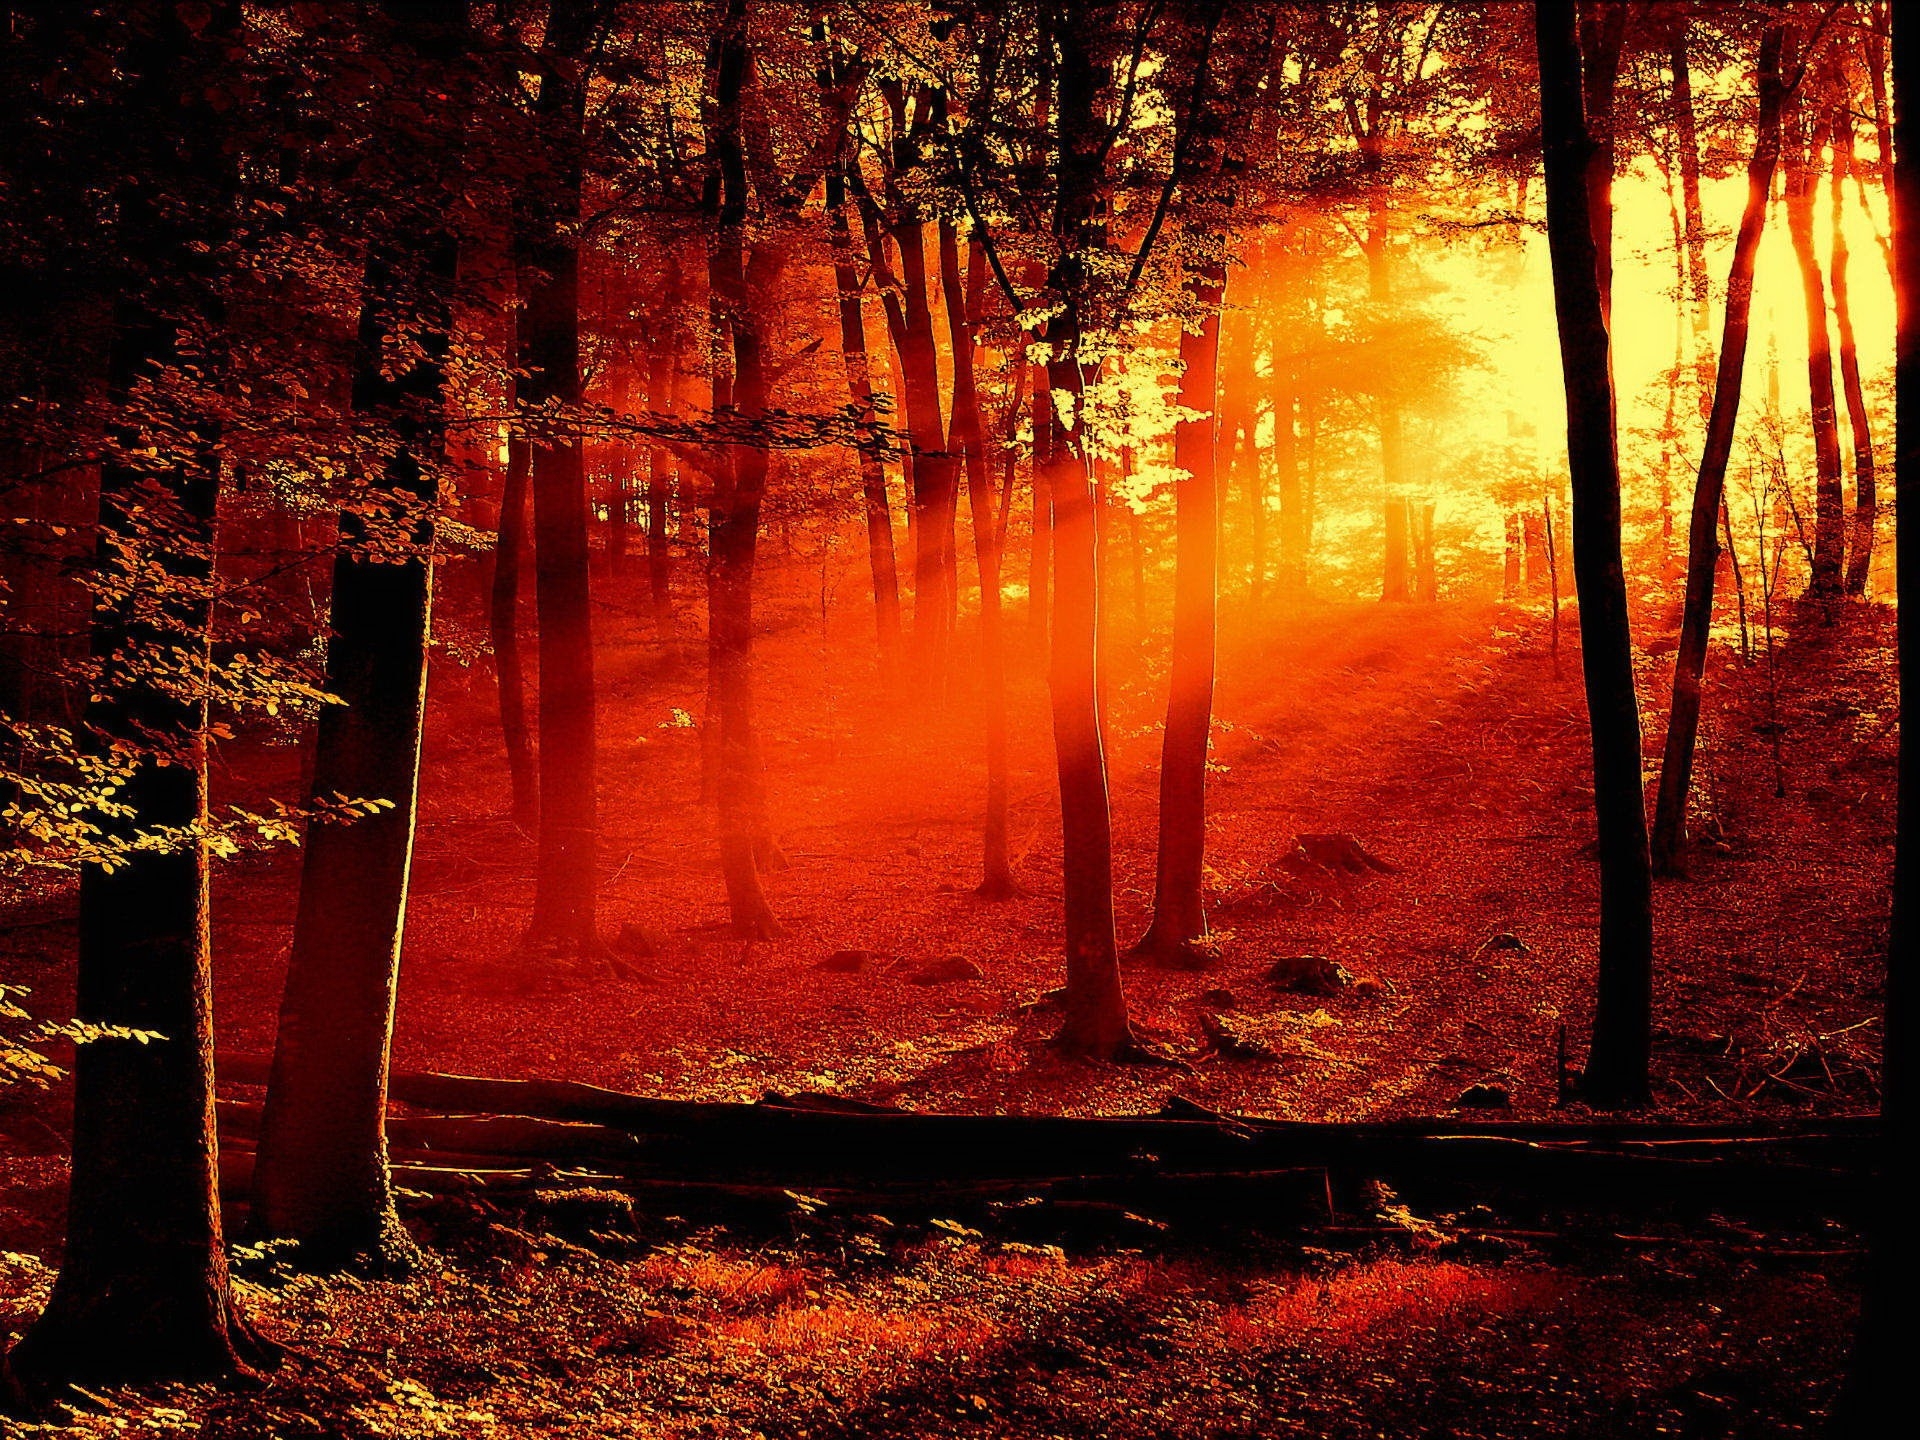 Бесплатное фото Картинка с изображением необычного солнечного света в лесу